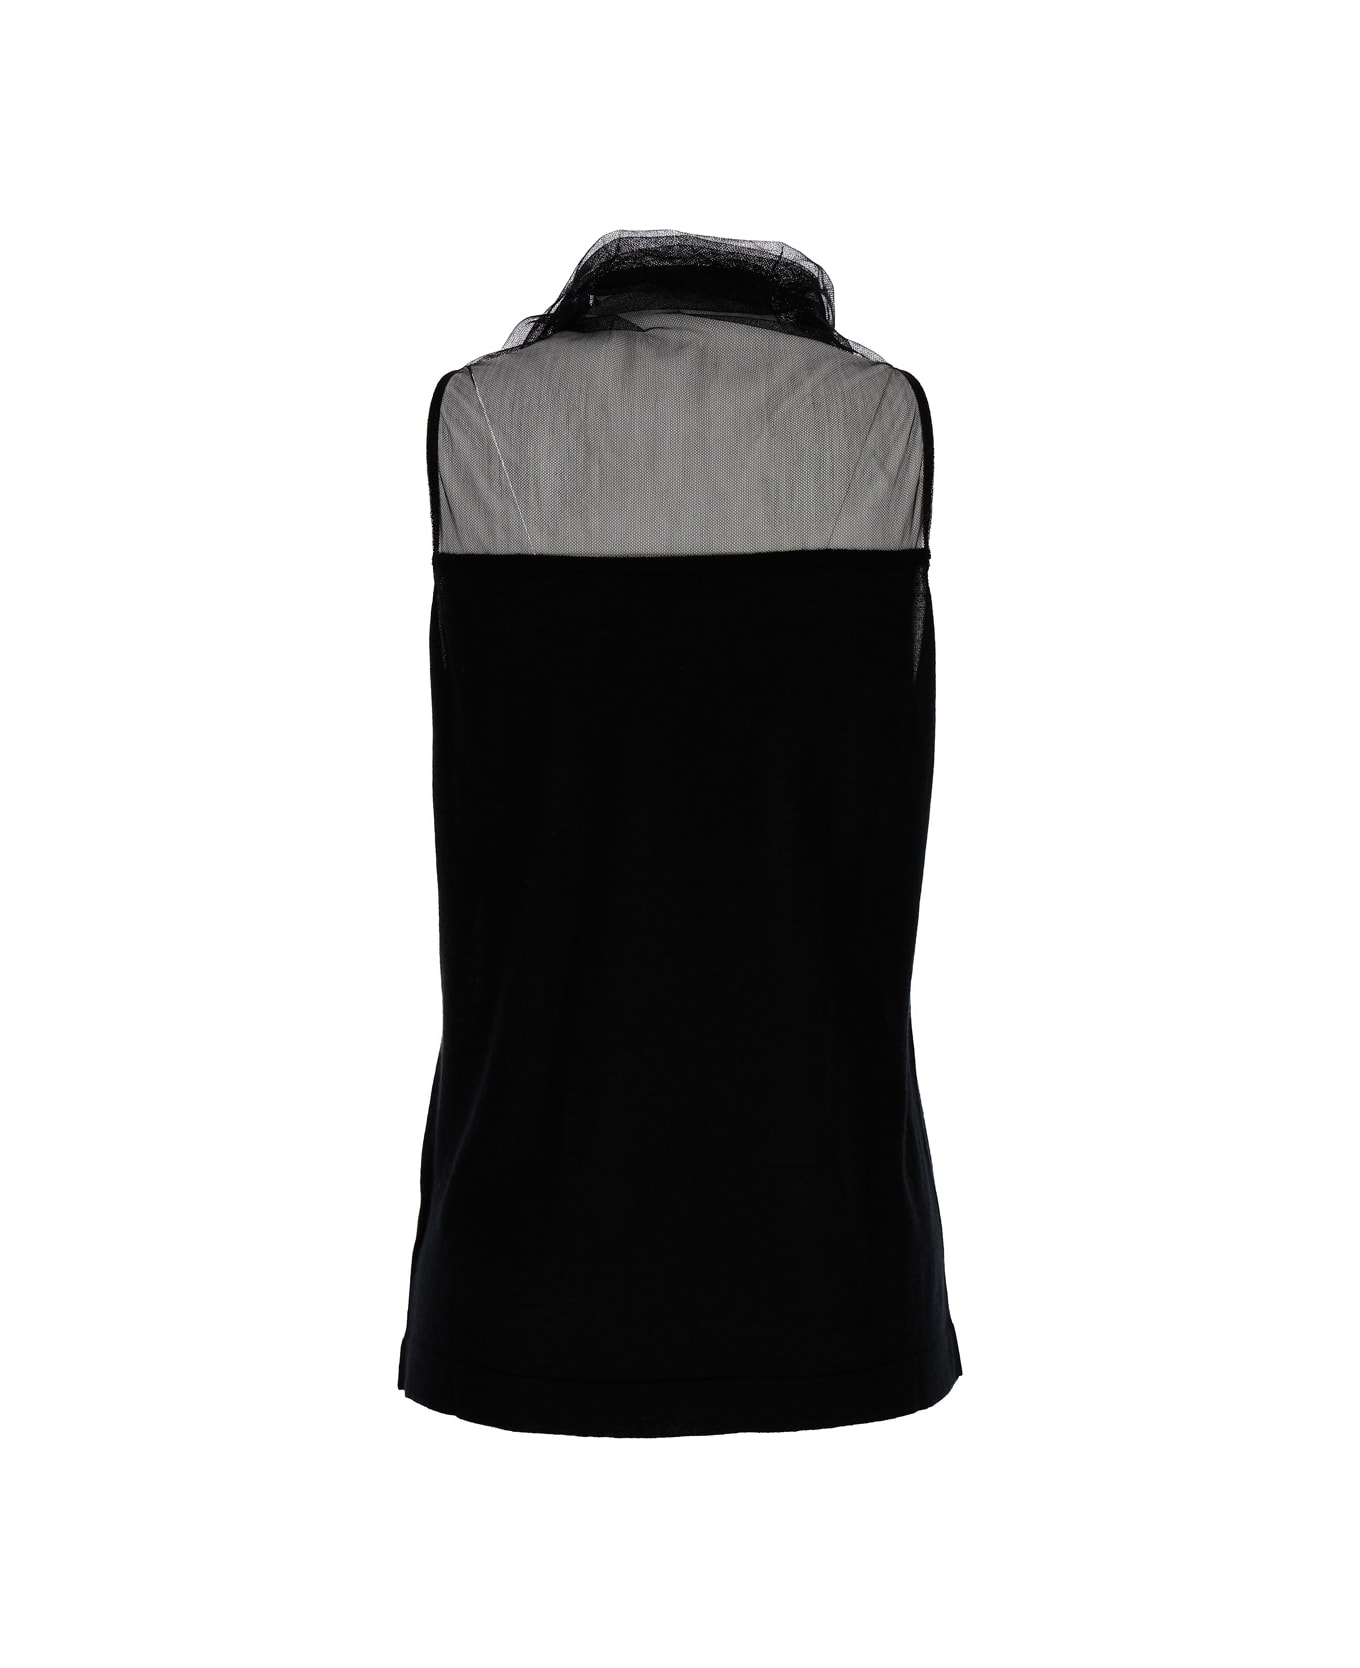 Fabiana Filippi High Neck Black Top In Silk & Cashmere Blend Woman - Black